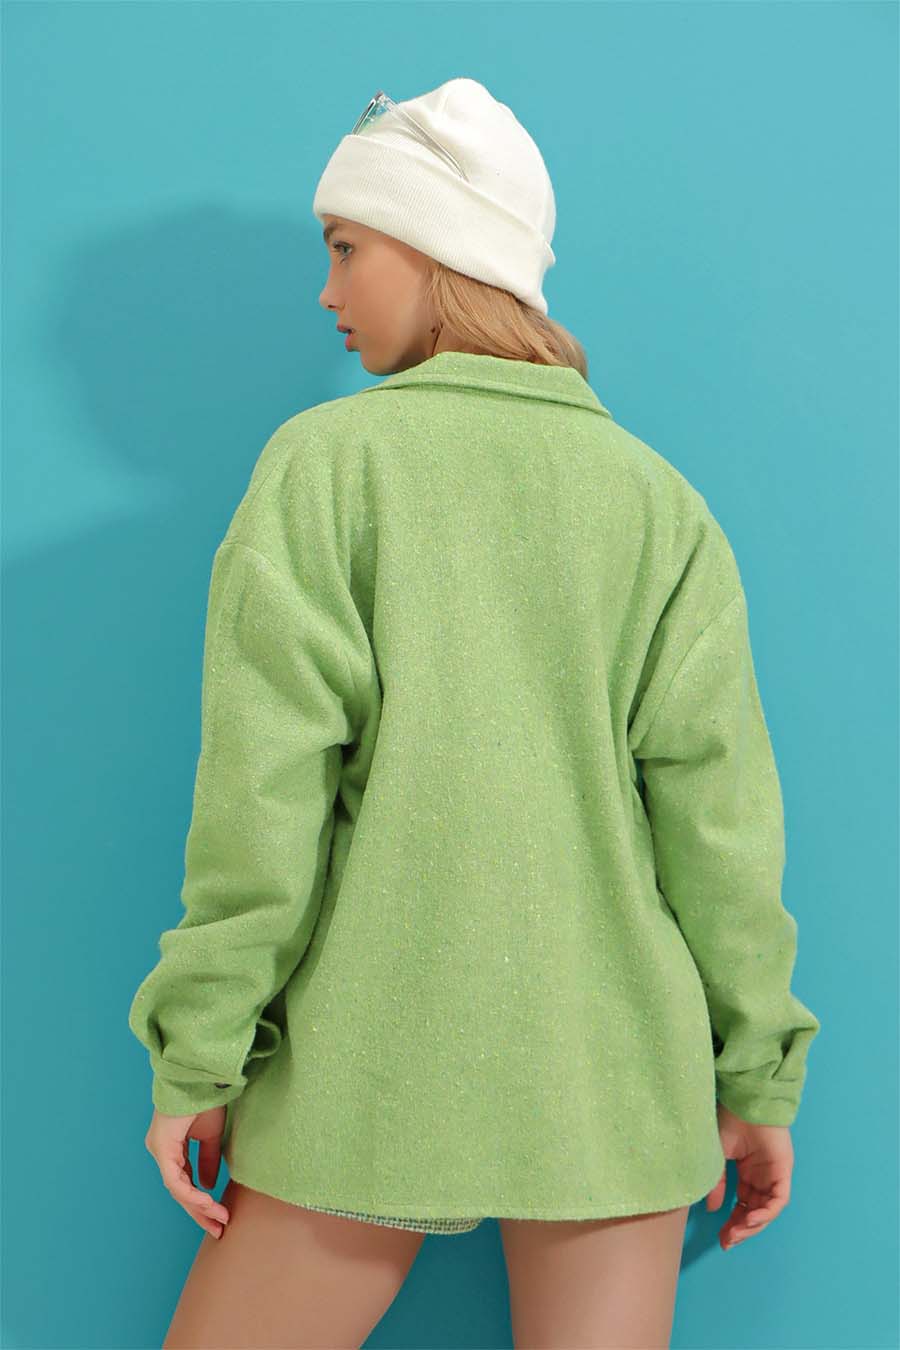 Γυναικείο πουκάμισο Eleanor, Ανοιχτό πράσινο 5